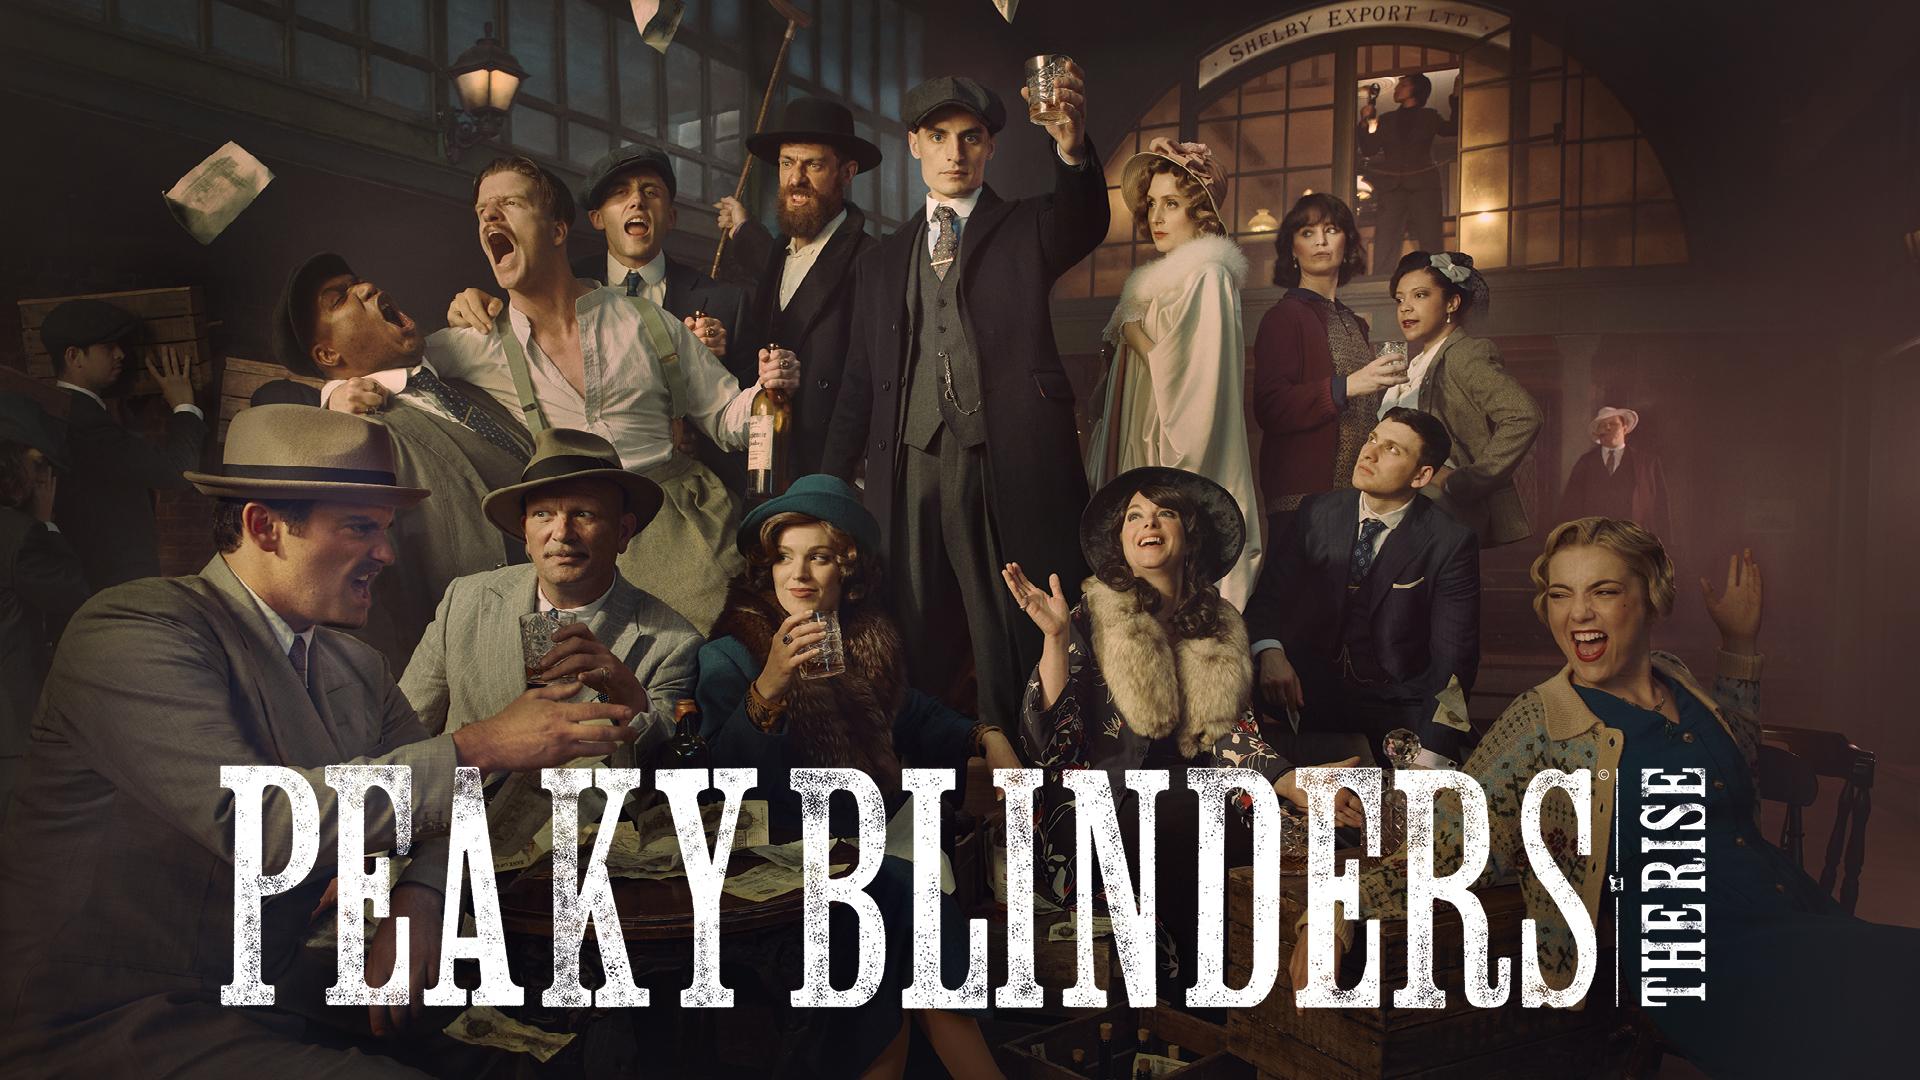 Peaky Blinders: The Rise , Peaky Blinders: The Rise photo #1